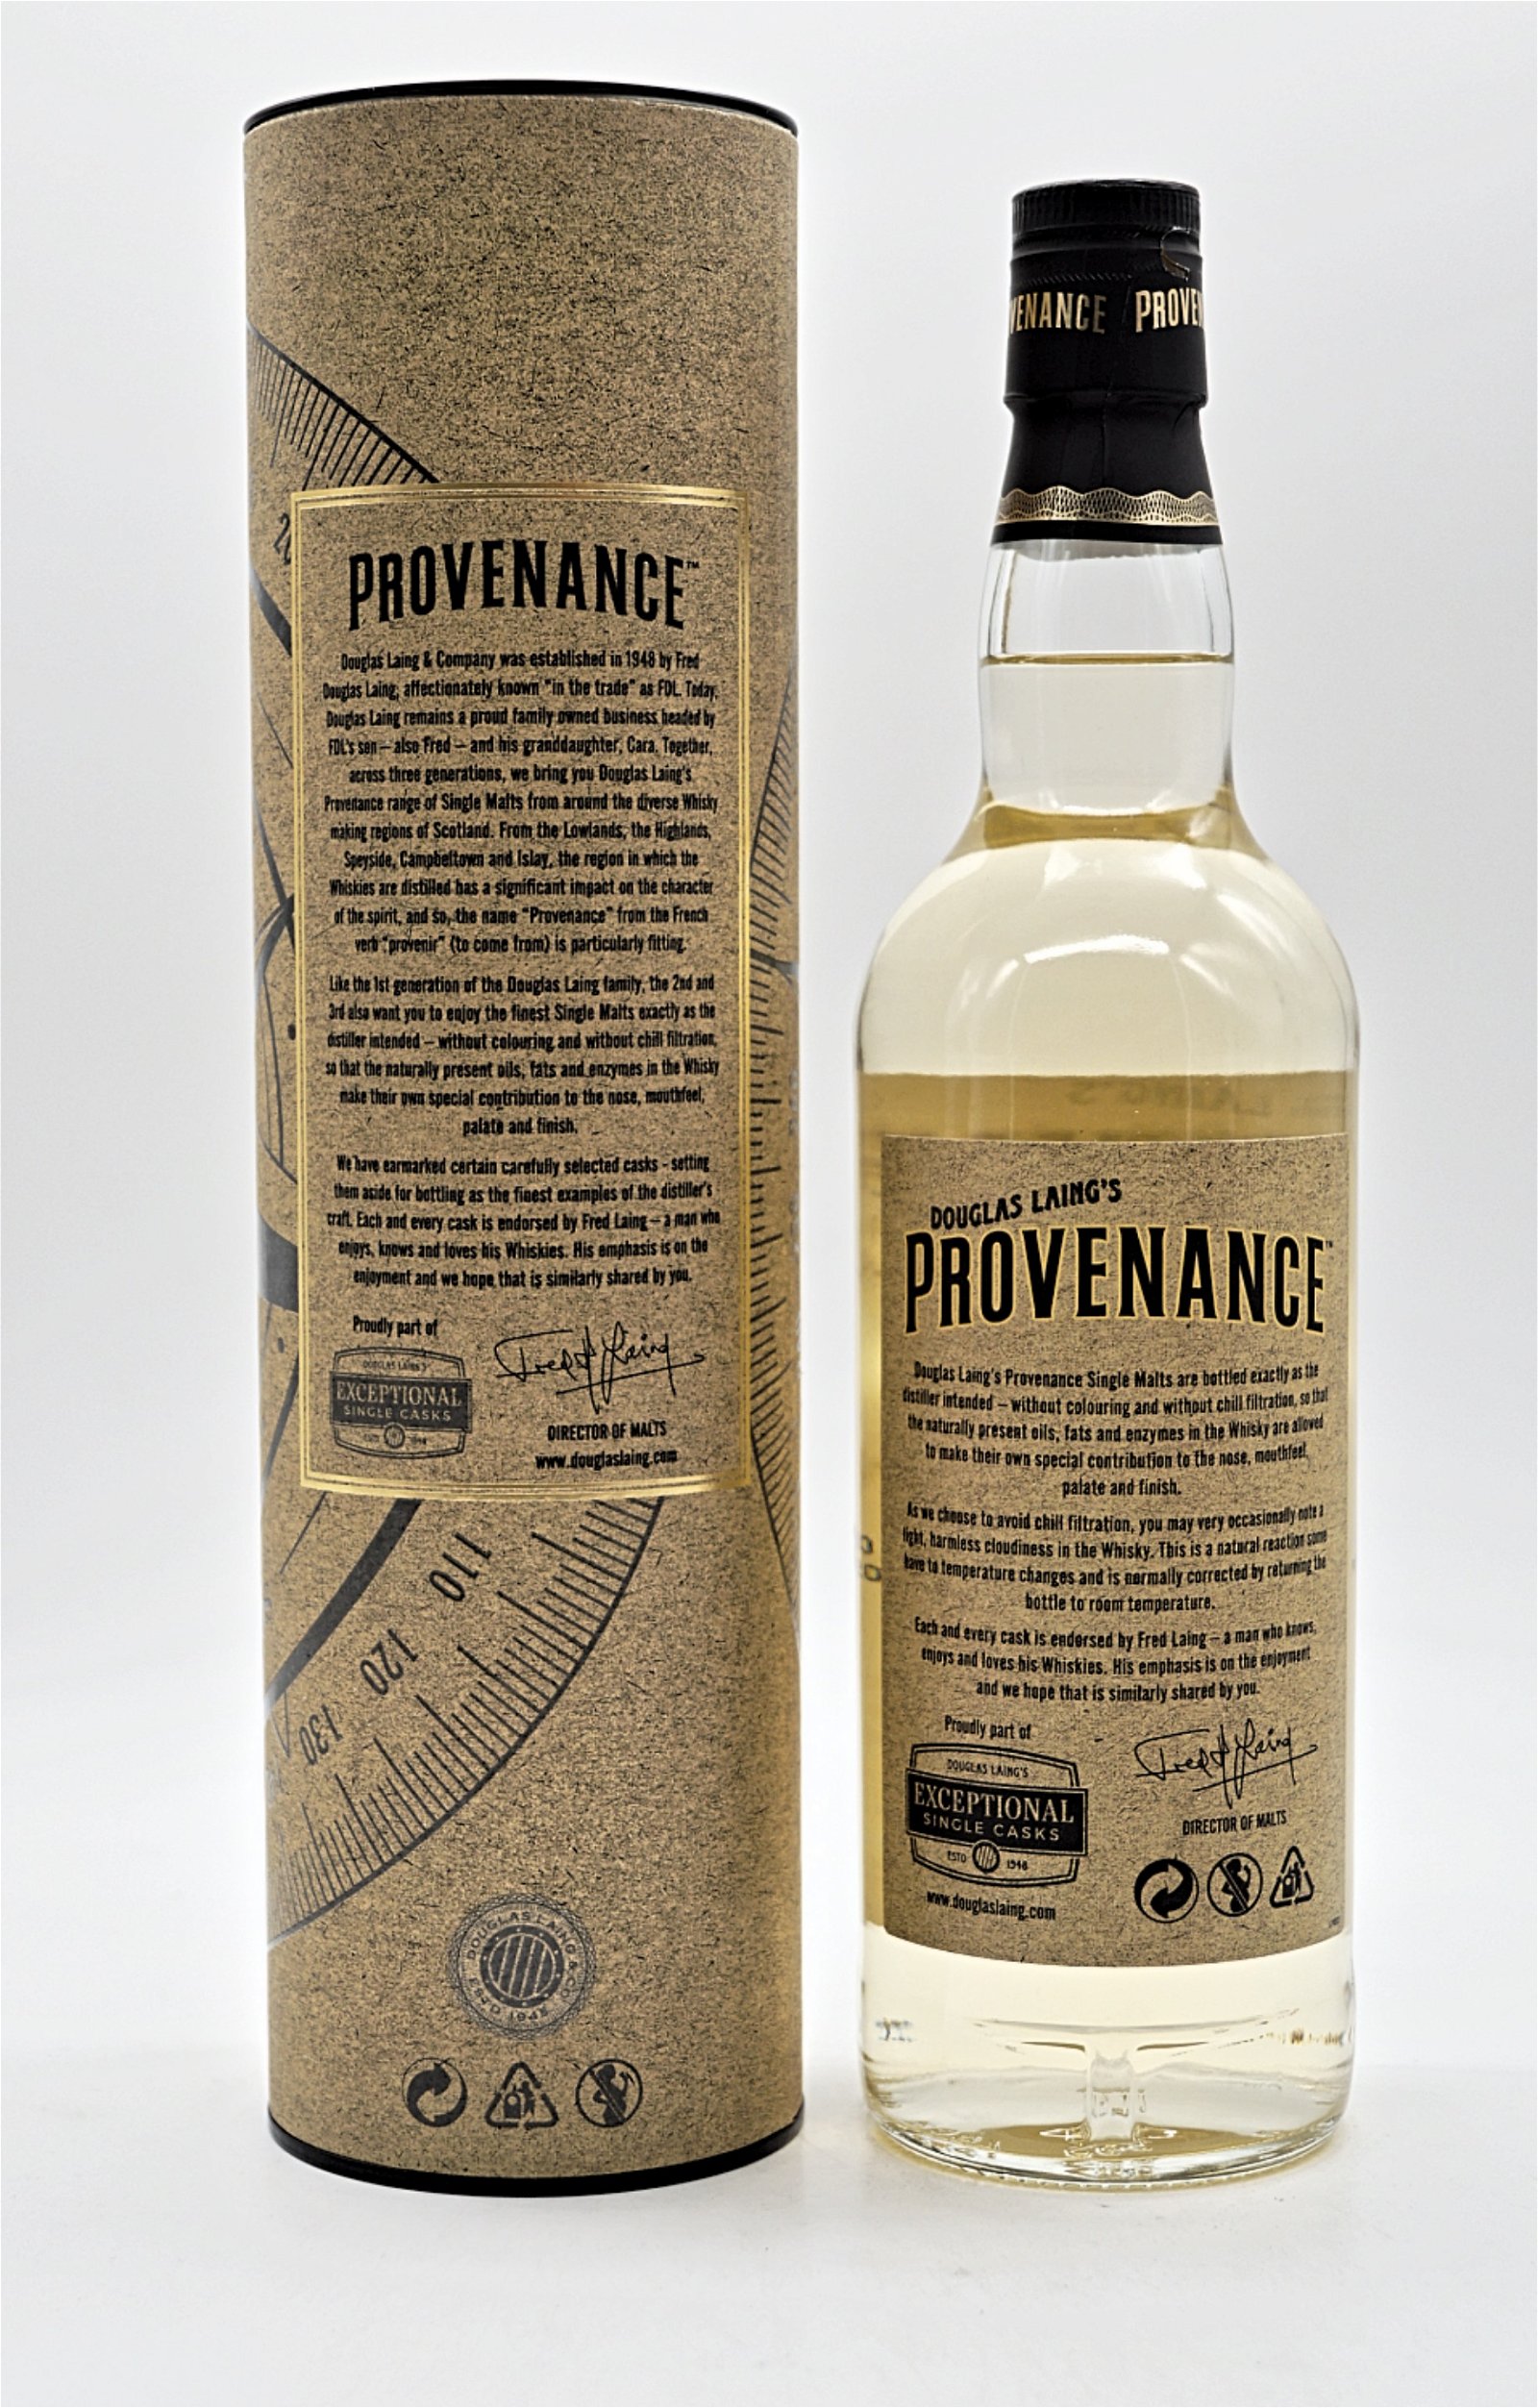 Provenance Caol Ila Distillery 6 Jahre 2010/2017 387 Fl. Single Cask Single Malt Scotch Whisky